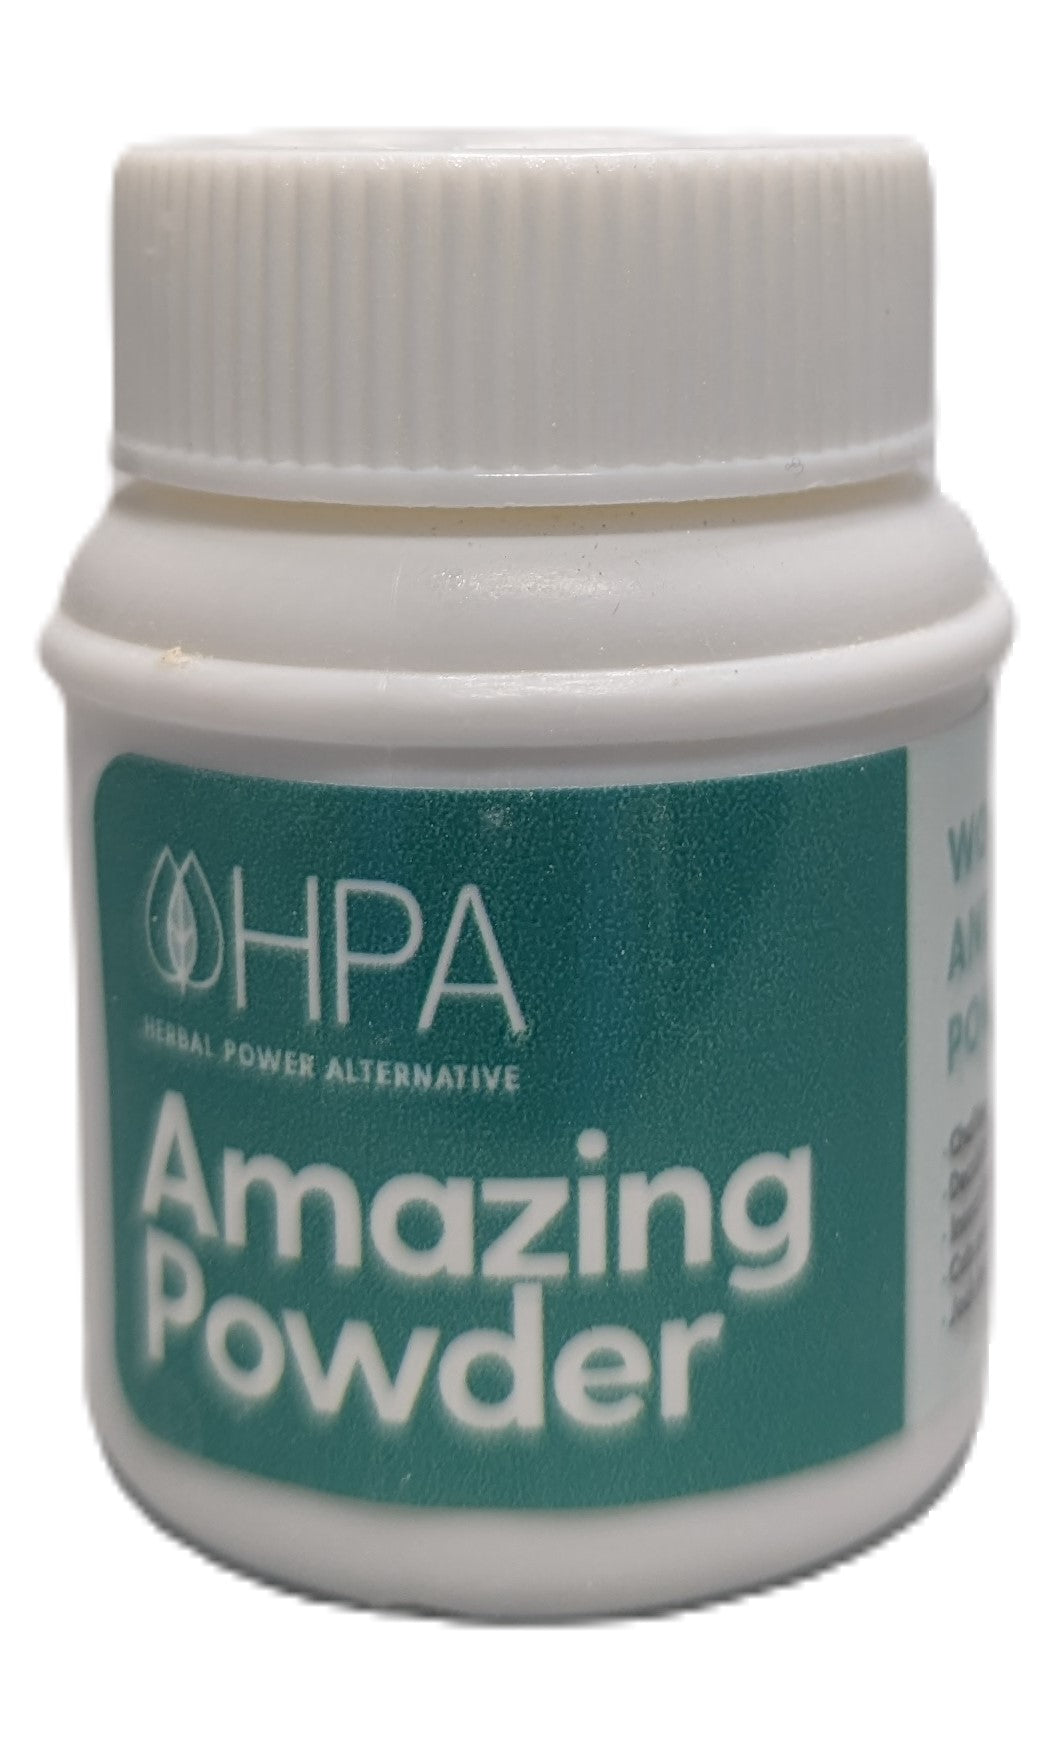 HPA Amazing Antiseptic Powder